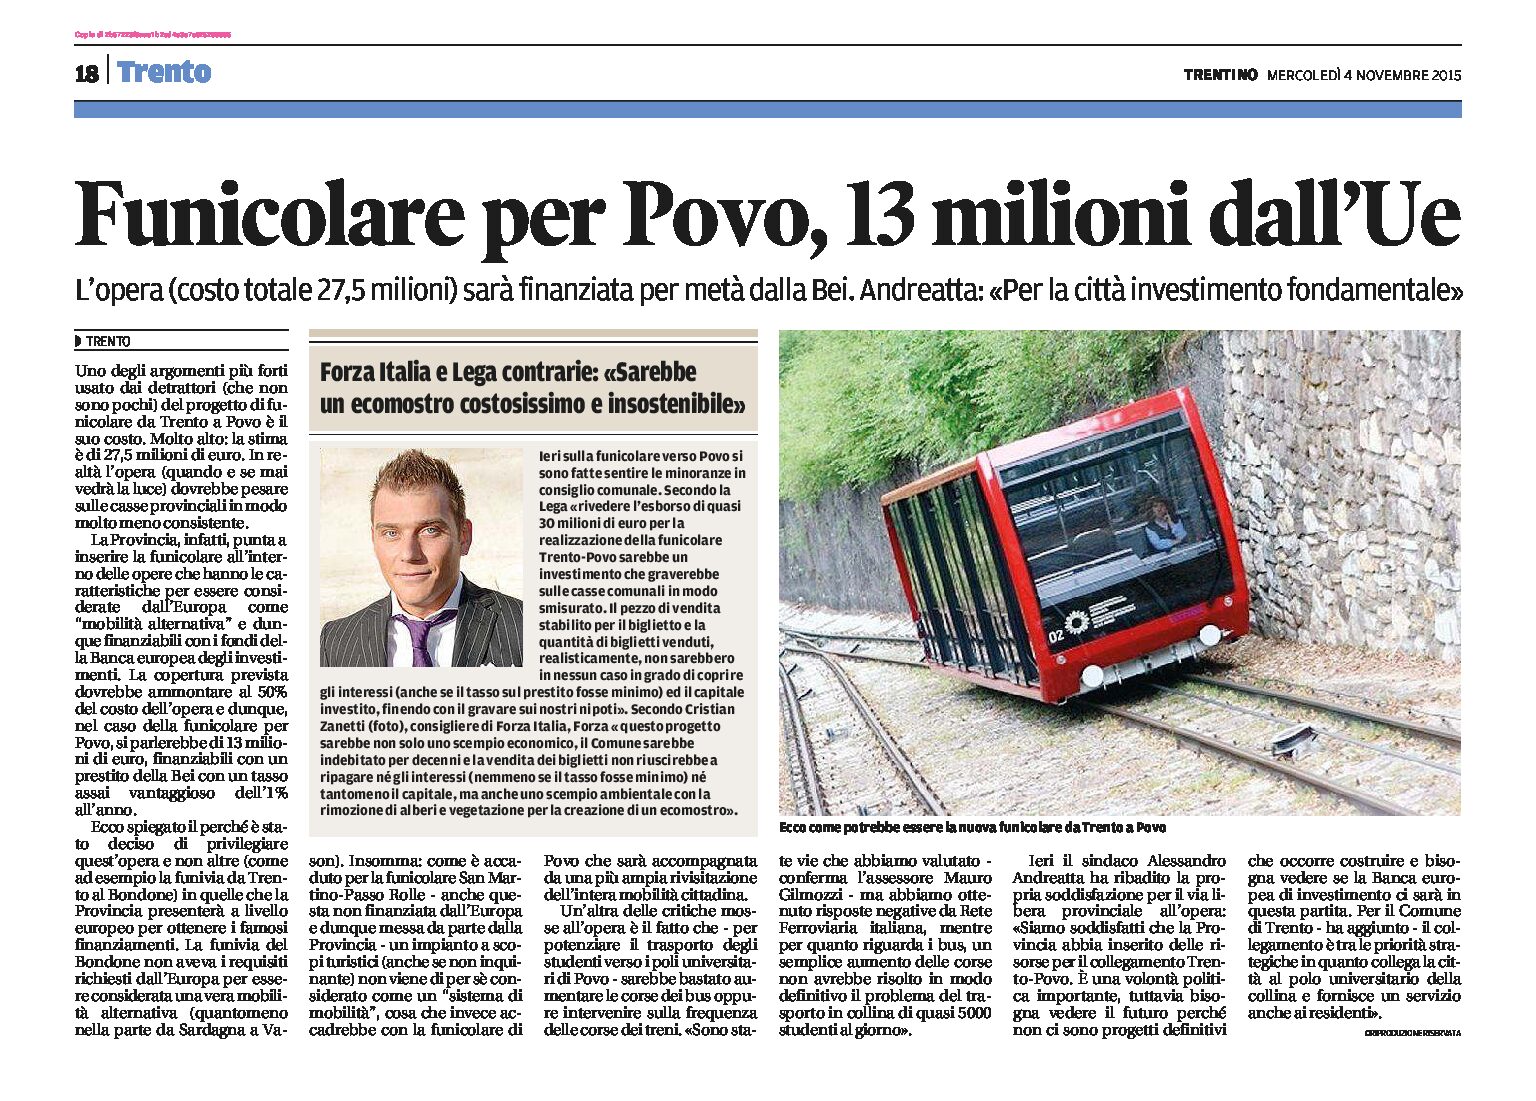 Trento-Povo: funicolare, 13 milioni dall’Ue